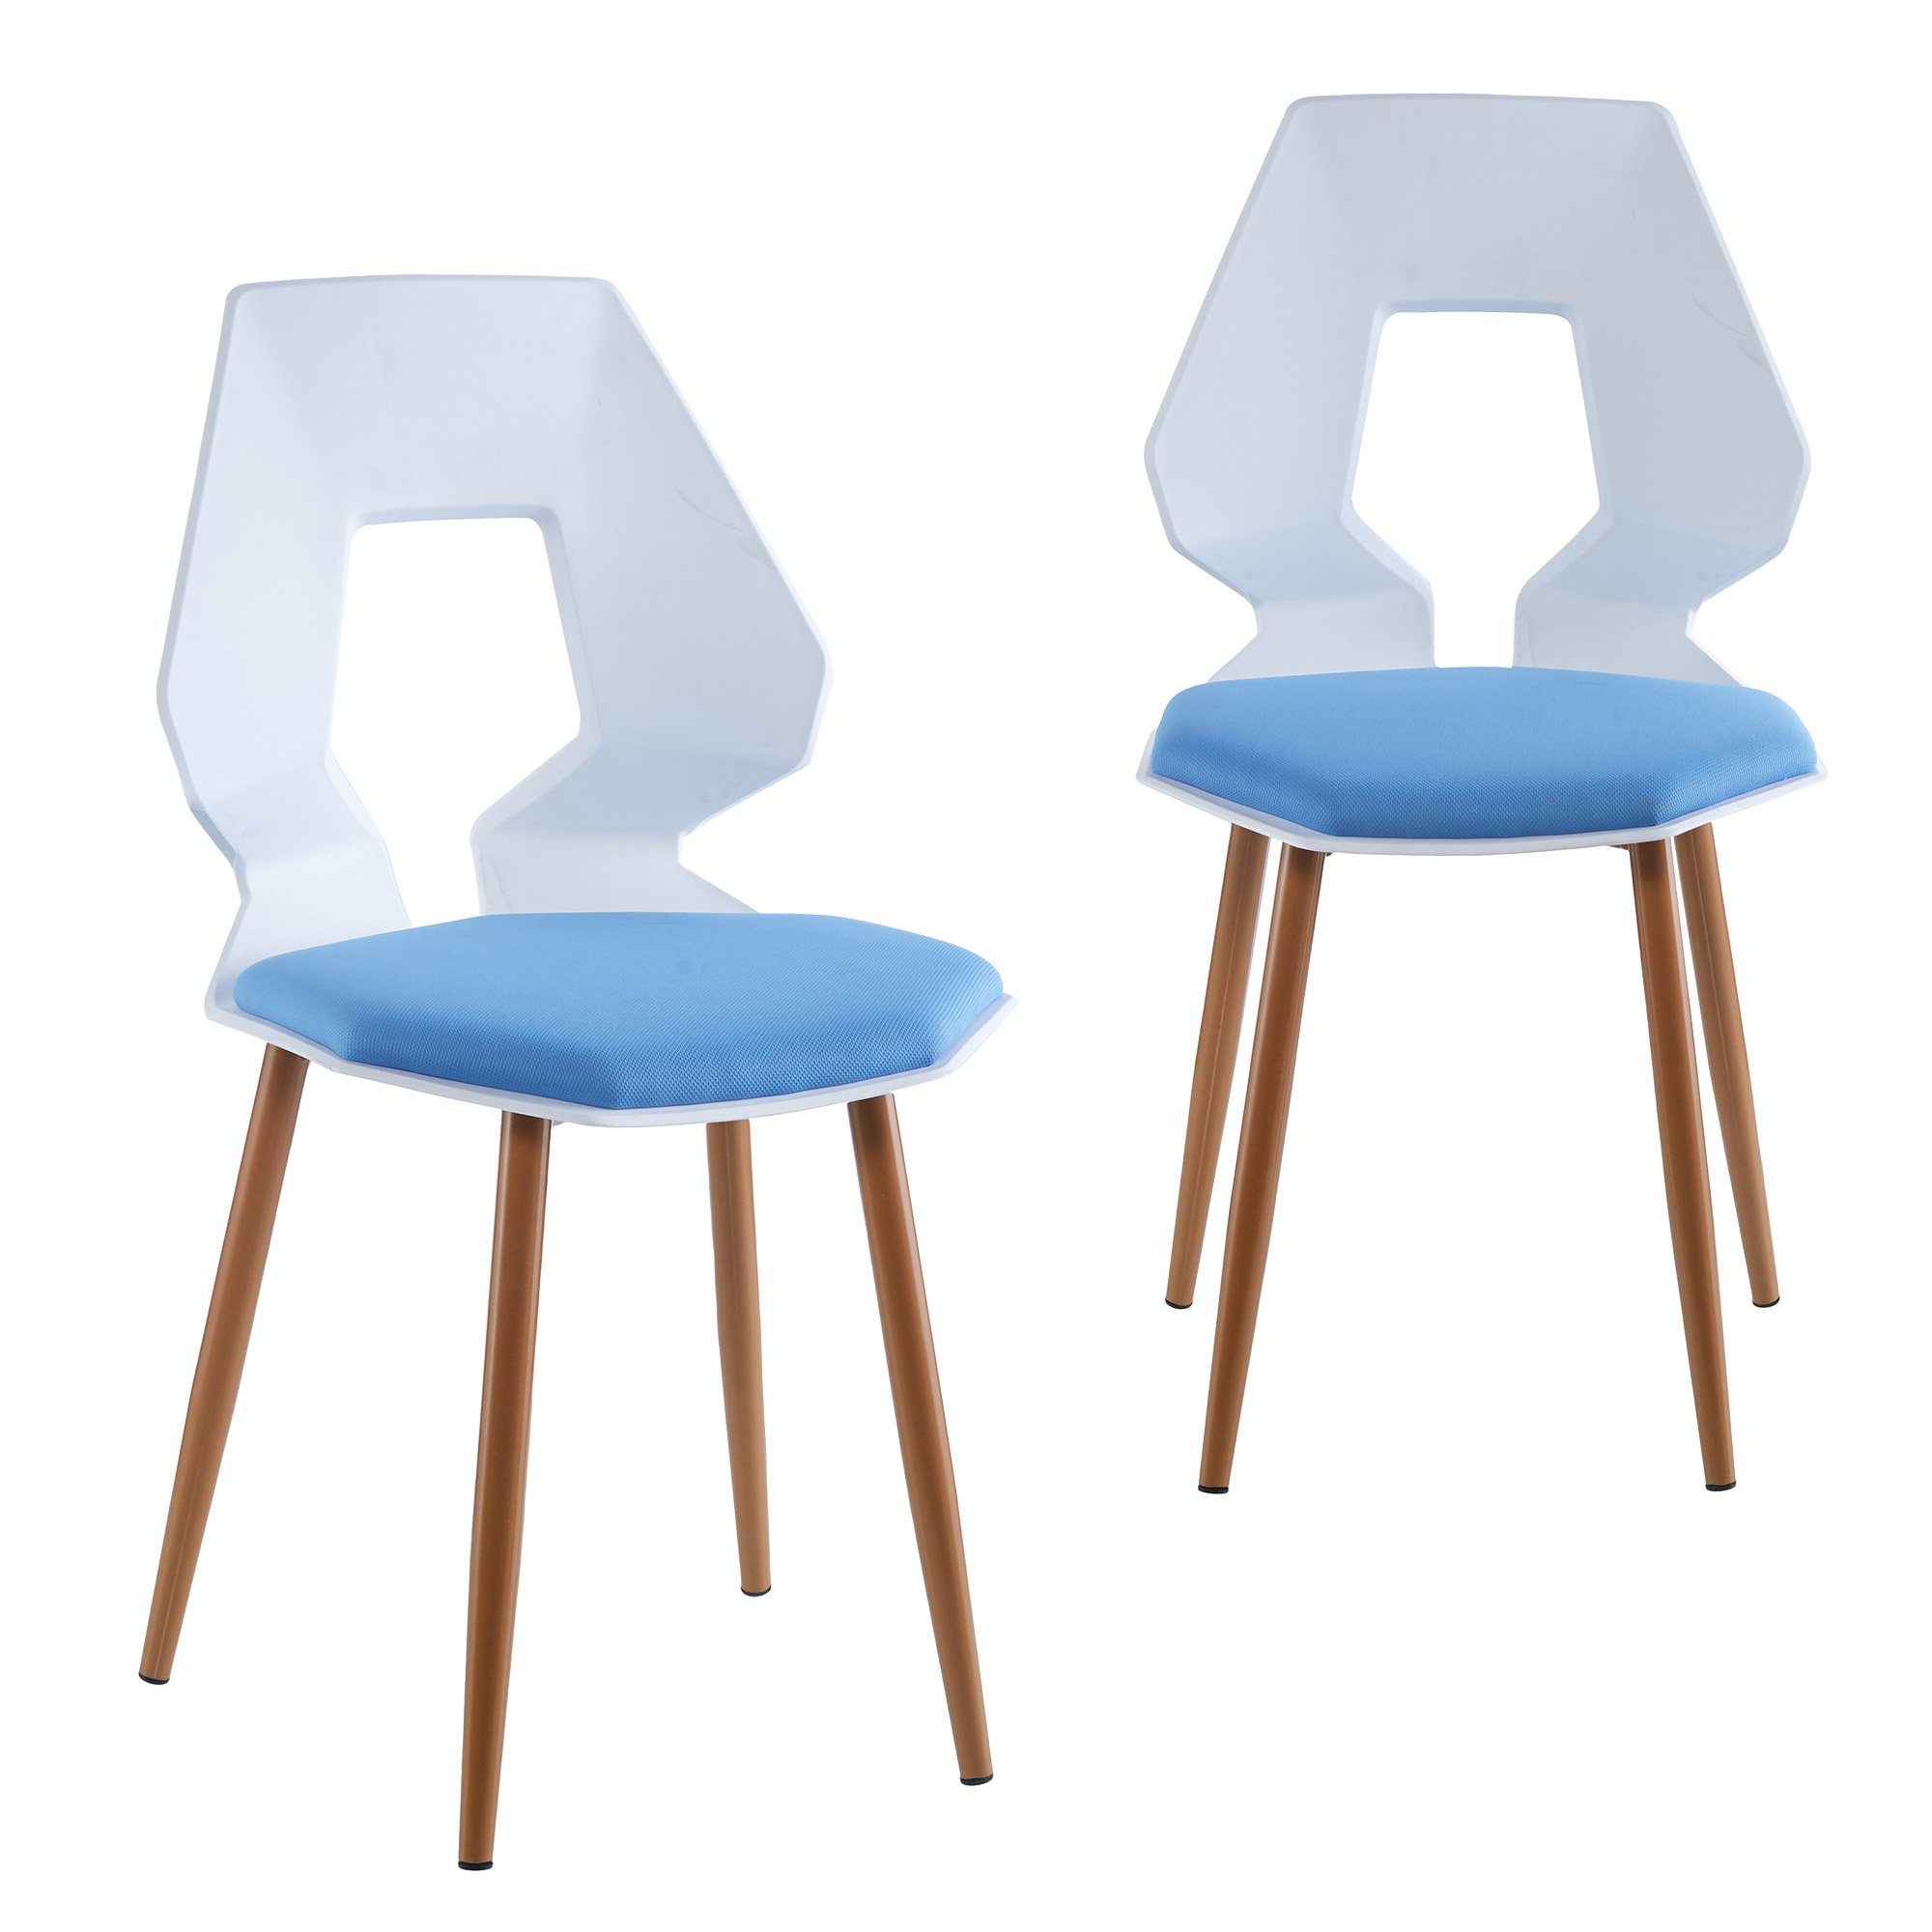 TRISENS Esszimmerstuhl Dorian (2er oder 4er Set, 2 St), Essstuhl aus stabiler Hartplastik Küchenstuhl in futuristischer Optik Weiß / Hellblau